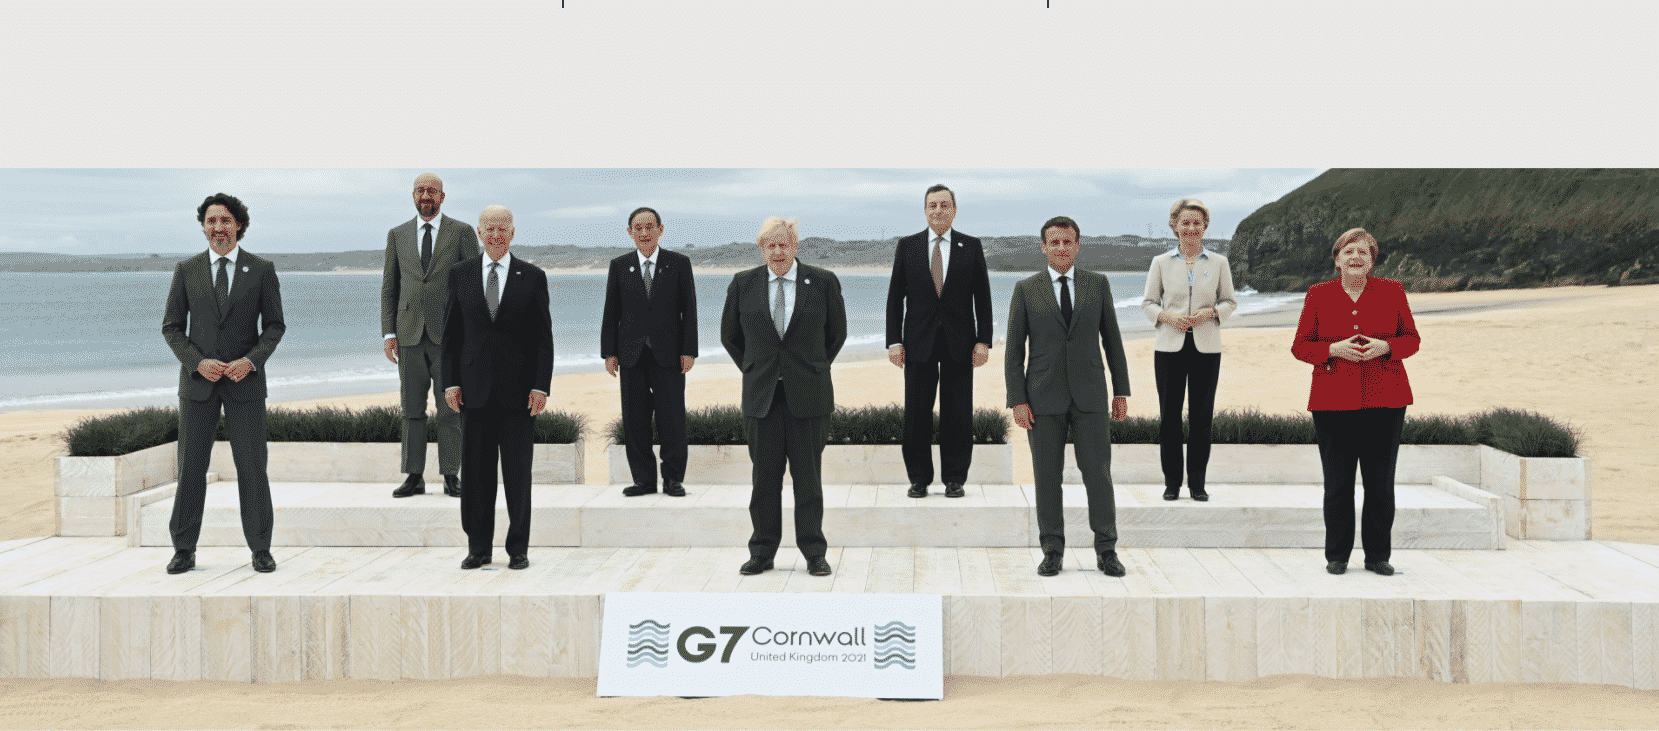 szczyt g7 liderzy|lot Londyn Kornwalia g7|g7 szczyt